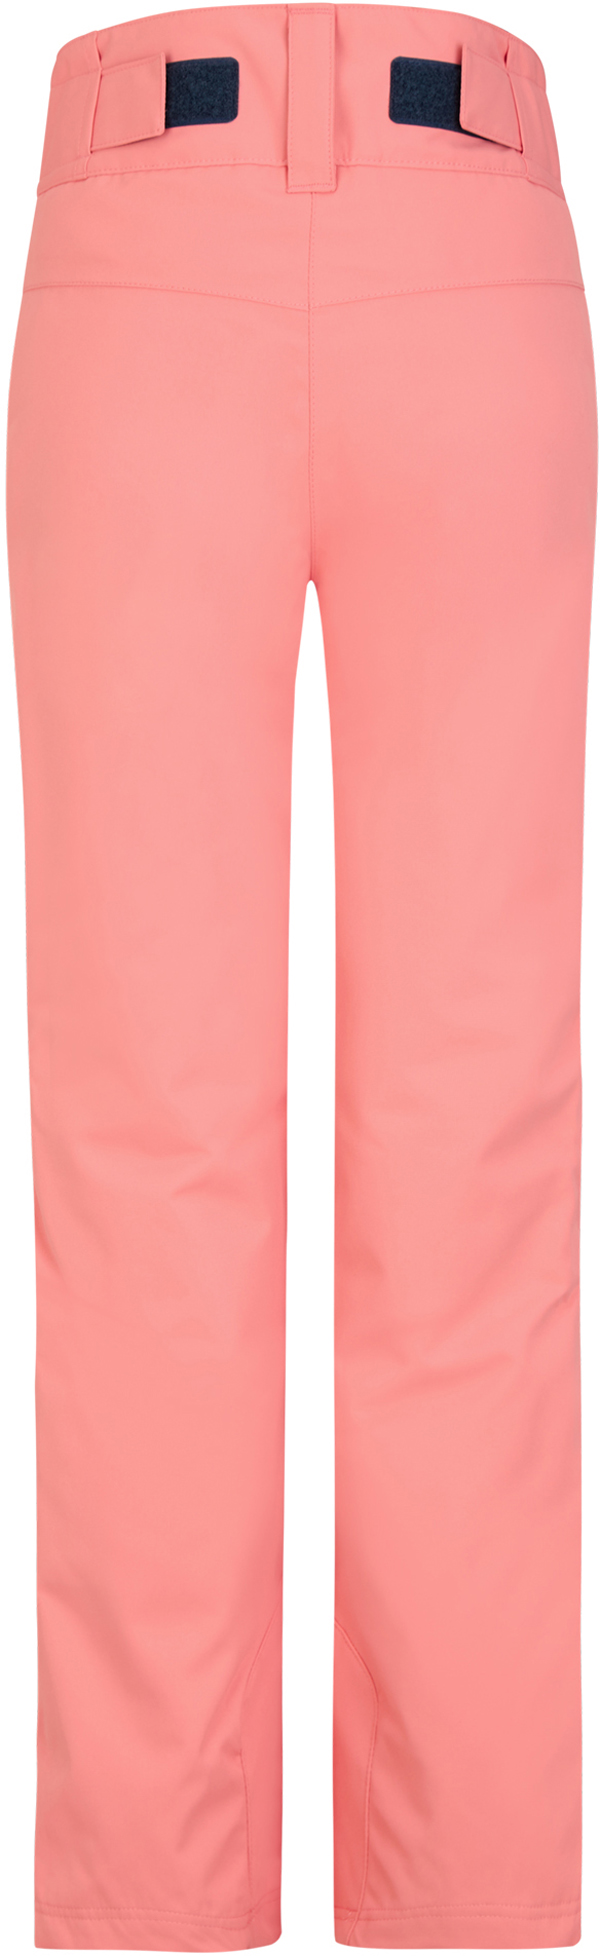 Ziener ALIN JUNIOR Hose pink vanilla stru | Warehouse One